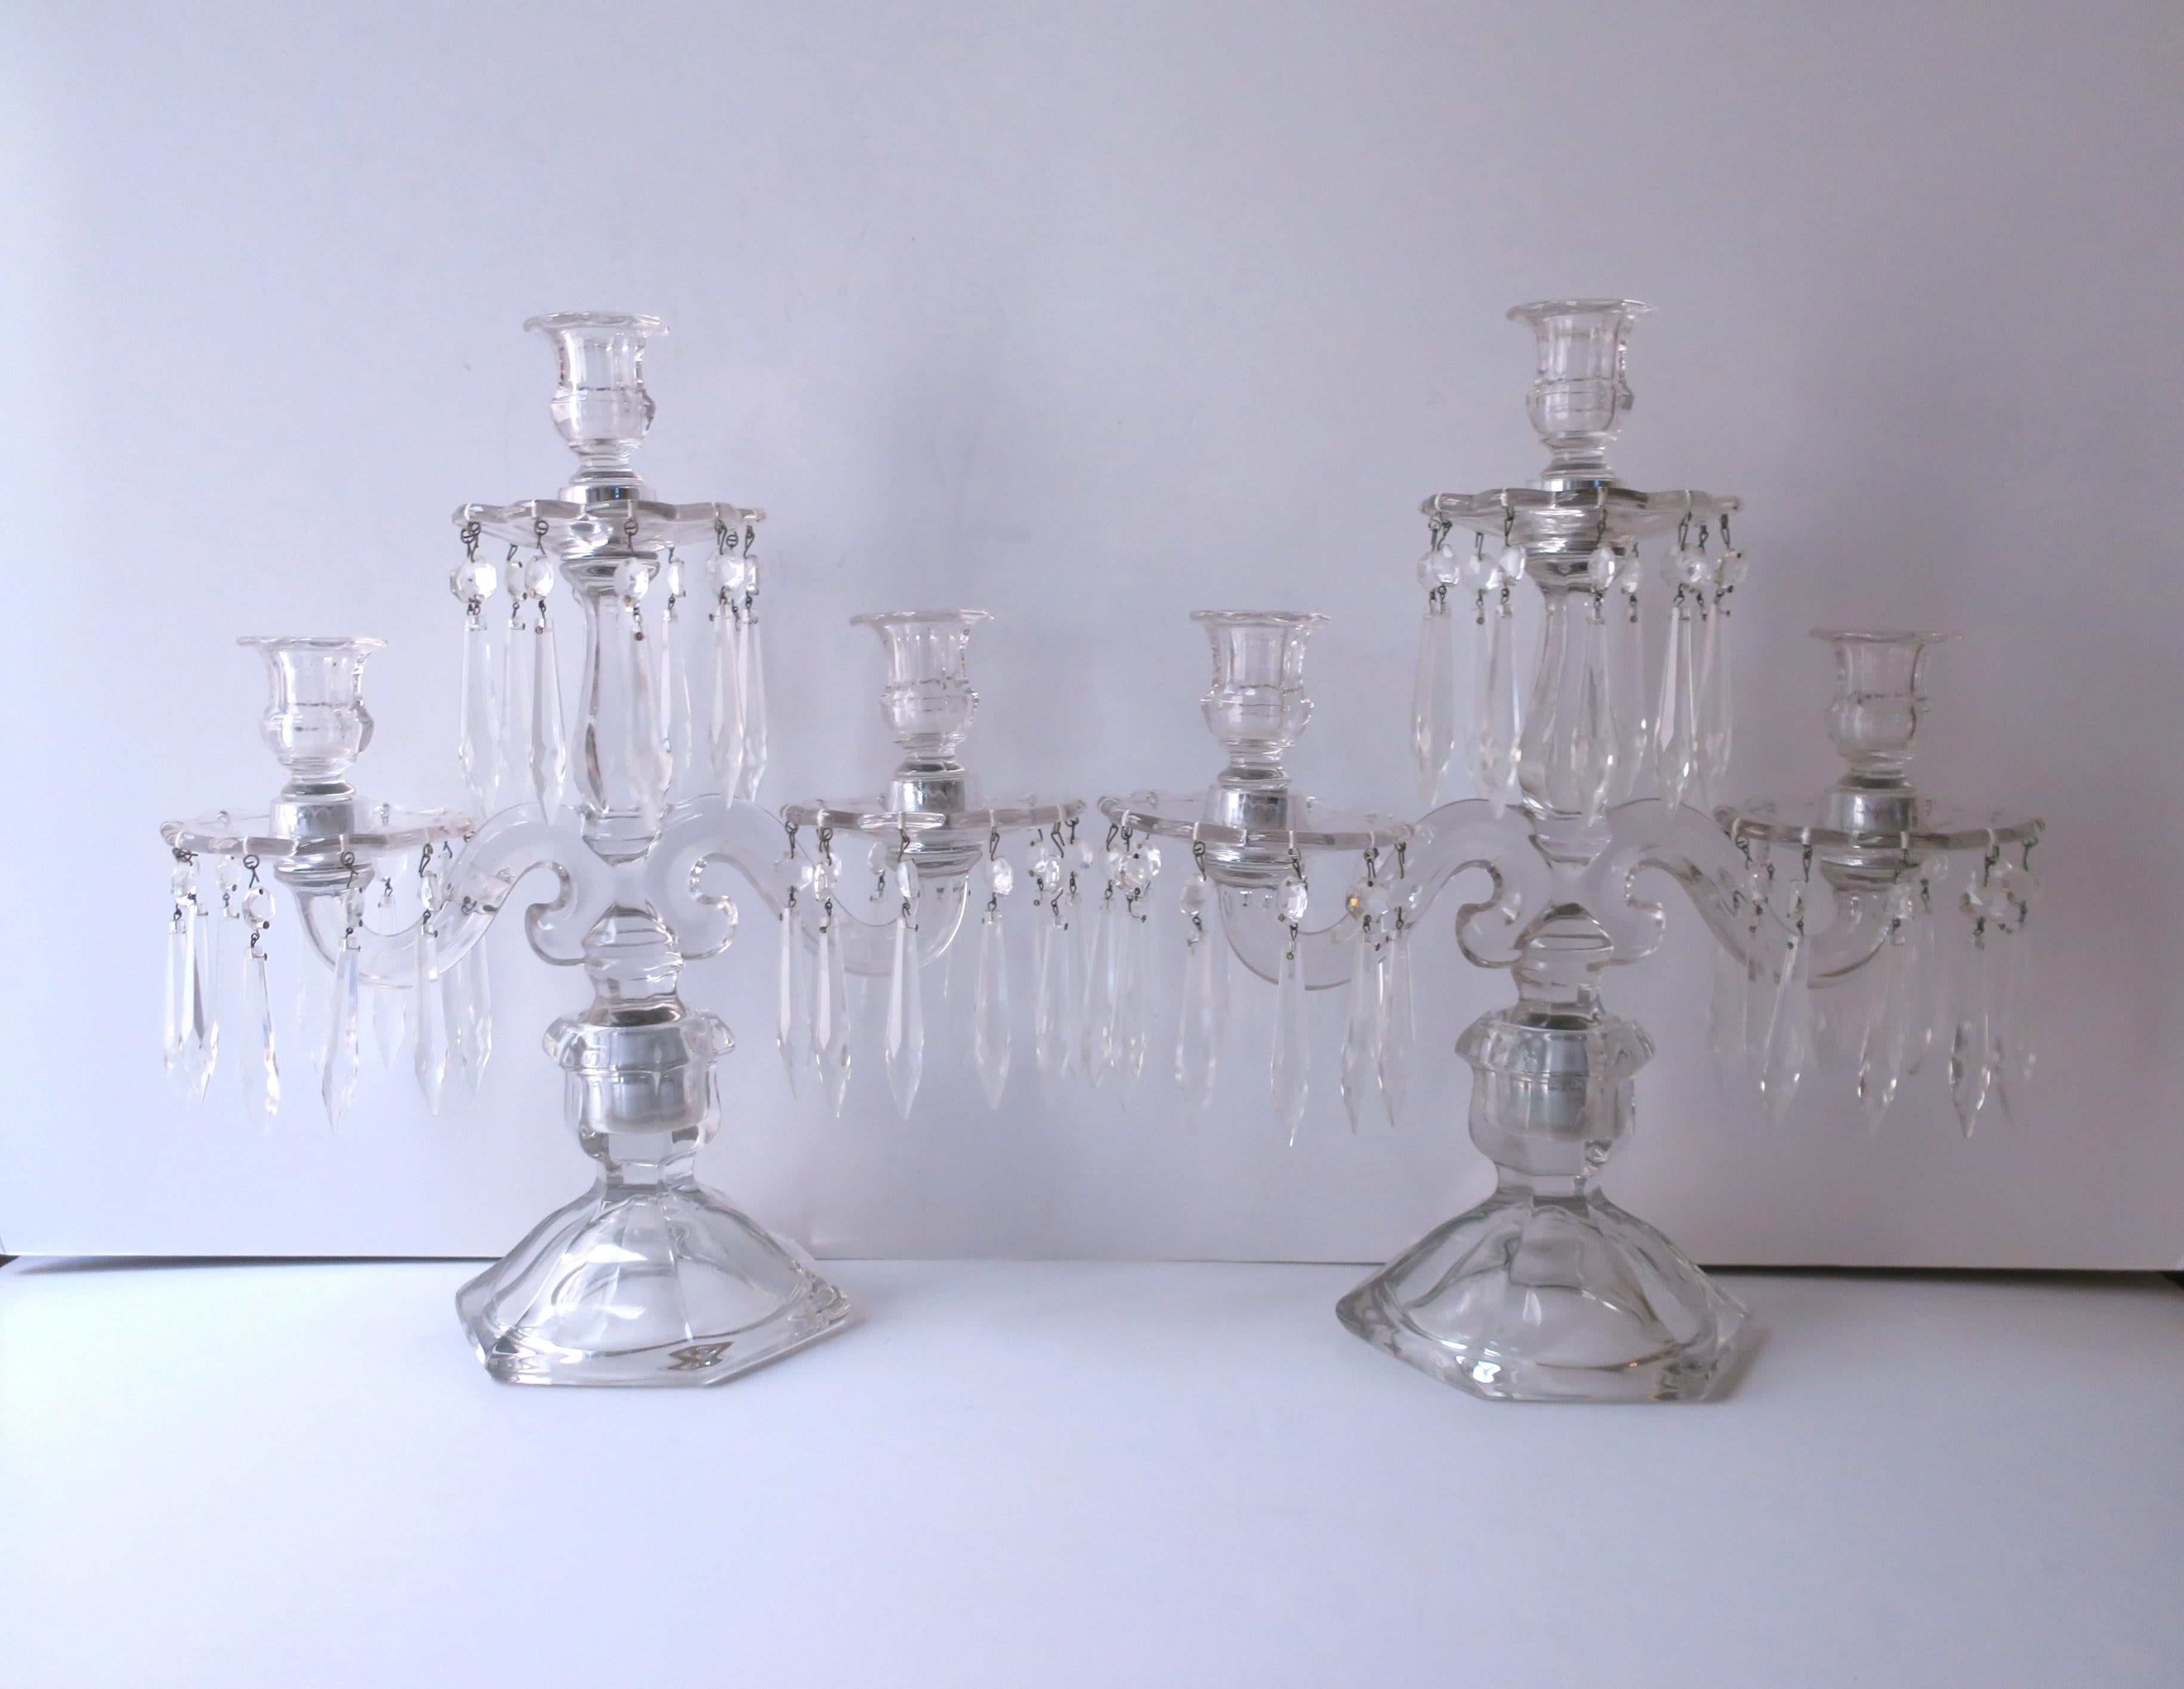 Ein schönes Paar zweiarmiger, dreiflammiger, transparenter Glaskandelaber mit Kristalltropfenprismen und abnehmbaren Bobeches, ca. Mitte des 20. Jahrhunderts. Eine Bobeche ist ein Glaskragen an einem Kerzensockel zum Auffangen von Tropfwasser